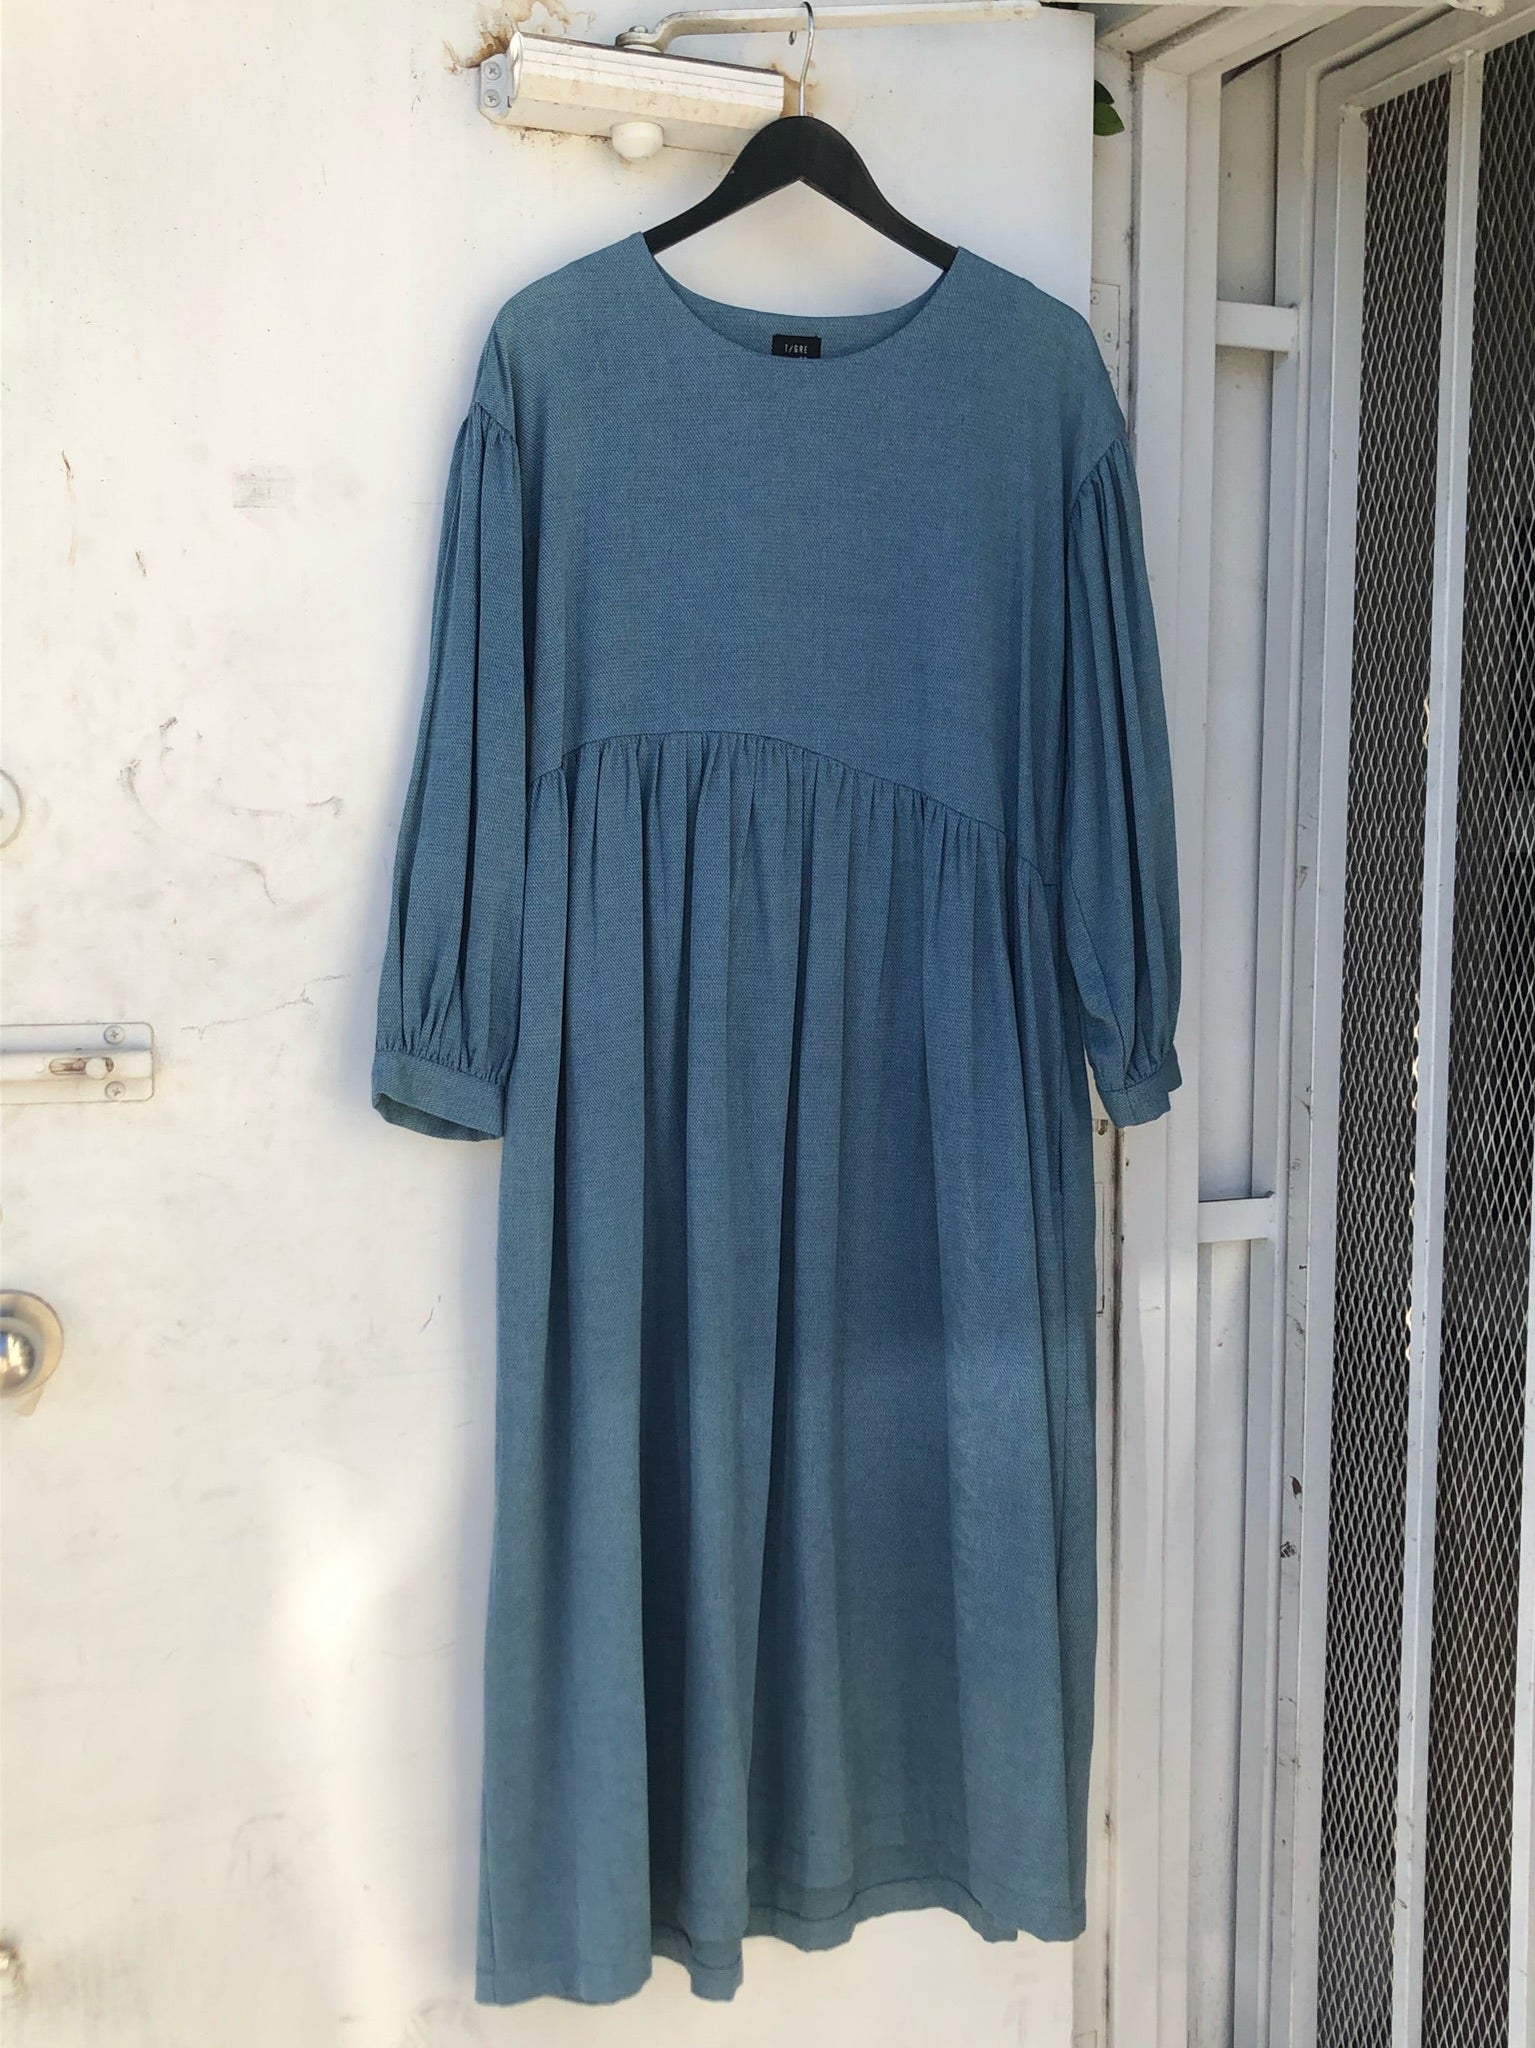 Jayme Dress in Denim Poplin - Size XS/S